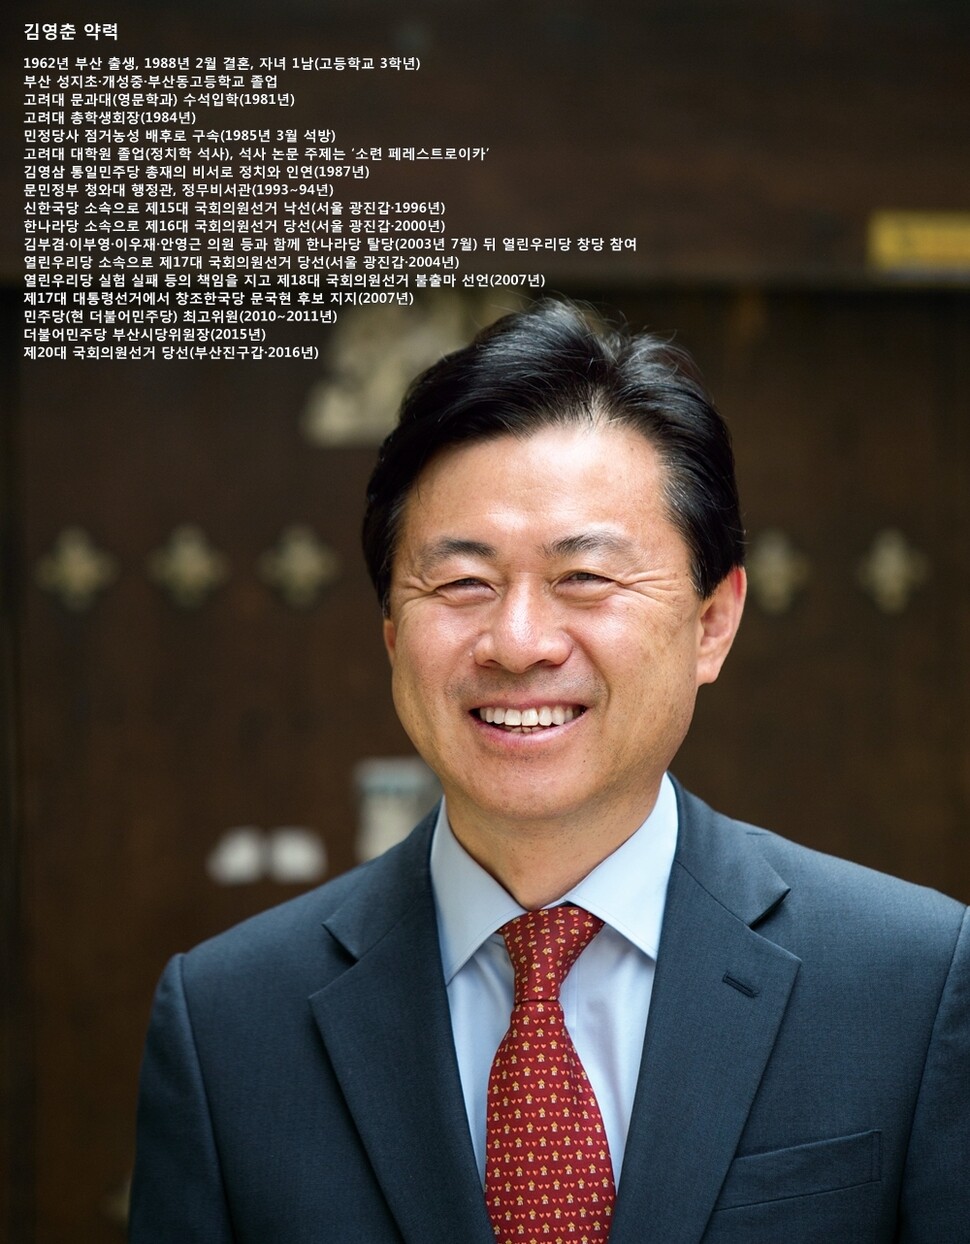 김진수 기자 (※이미지를 누르면 더 크게 보실 수 있습니다.)